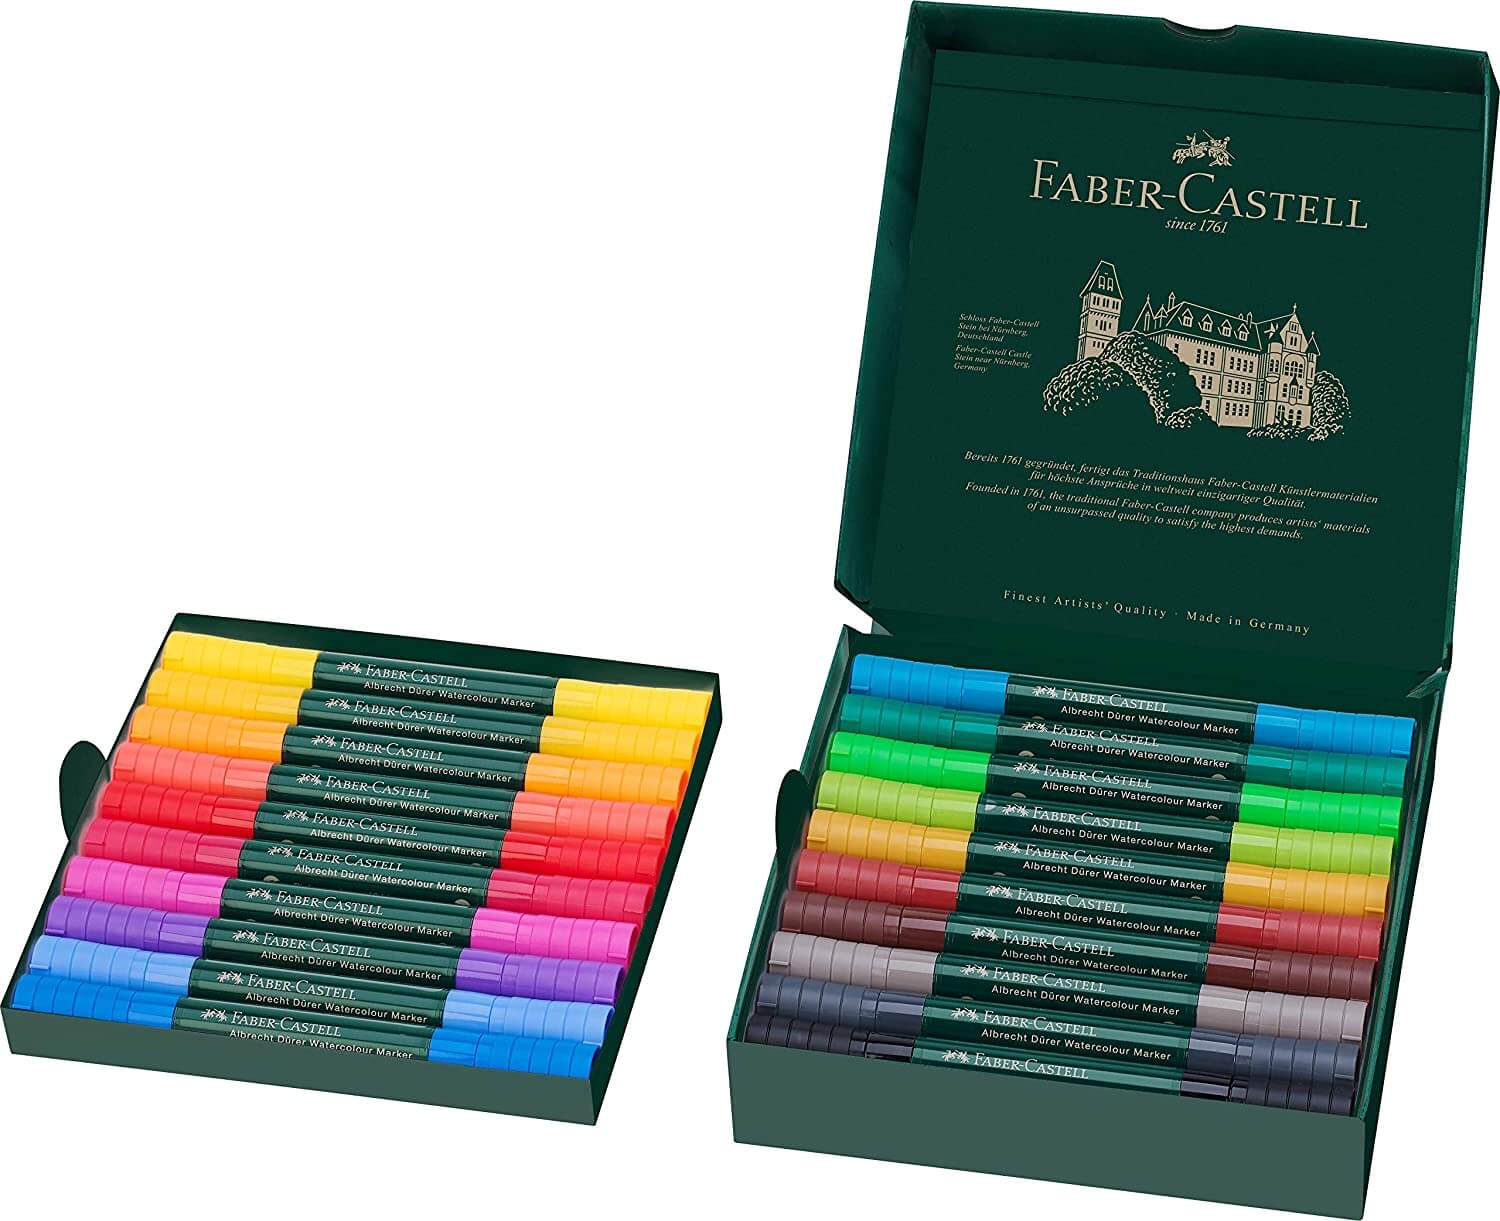 Faber Castell Albrecht Durer Watercolour Markers Set Of 20